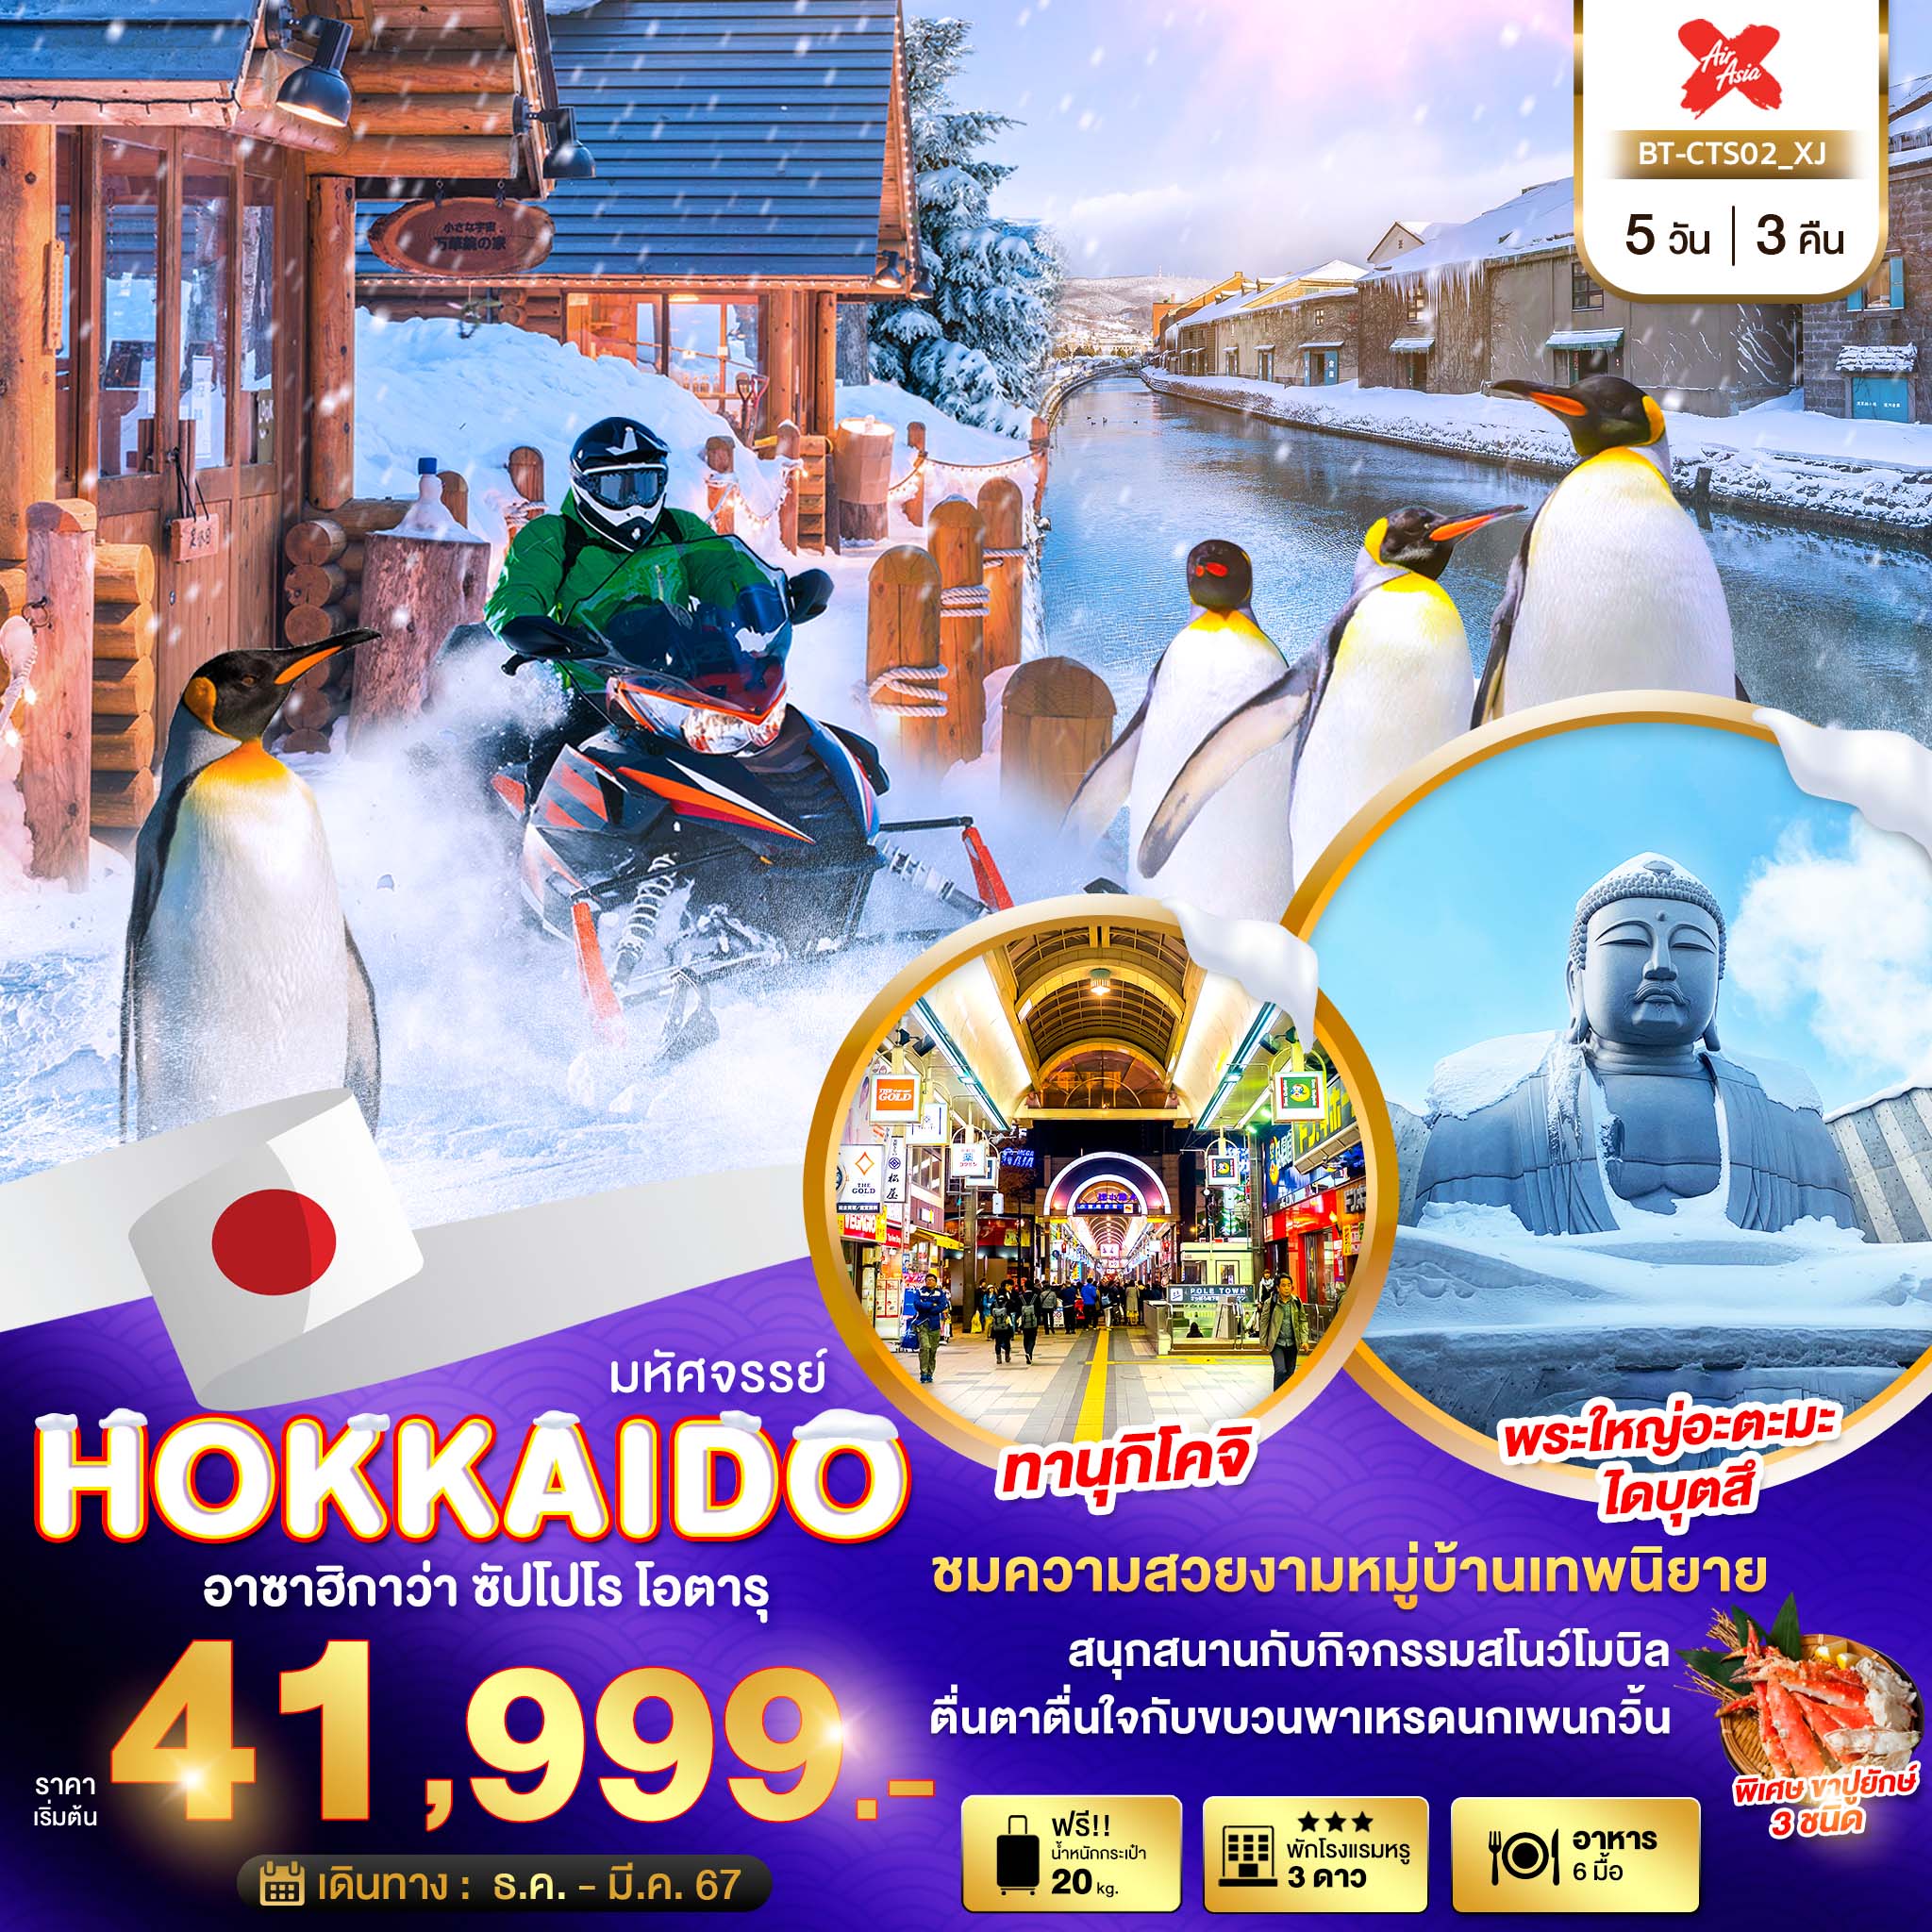 ทัวร์ญี่ปุ่น มหัศจรรย์ HOKKAIDO อาซาฮิกาว่า ซัปโปโร โอตารุ 5วัน 3คืน